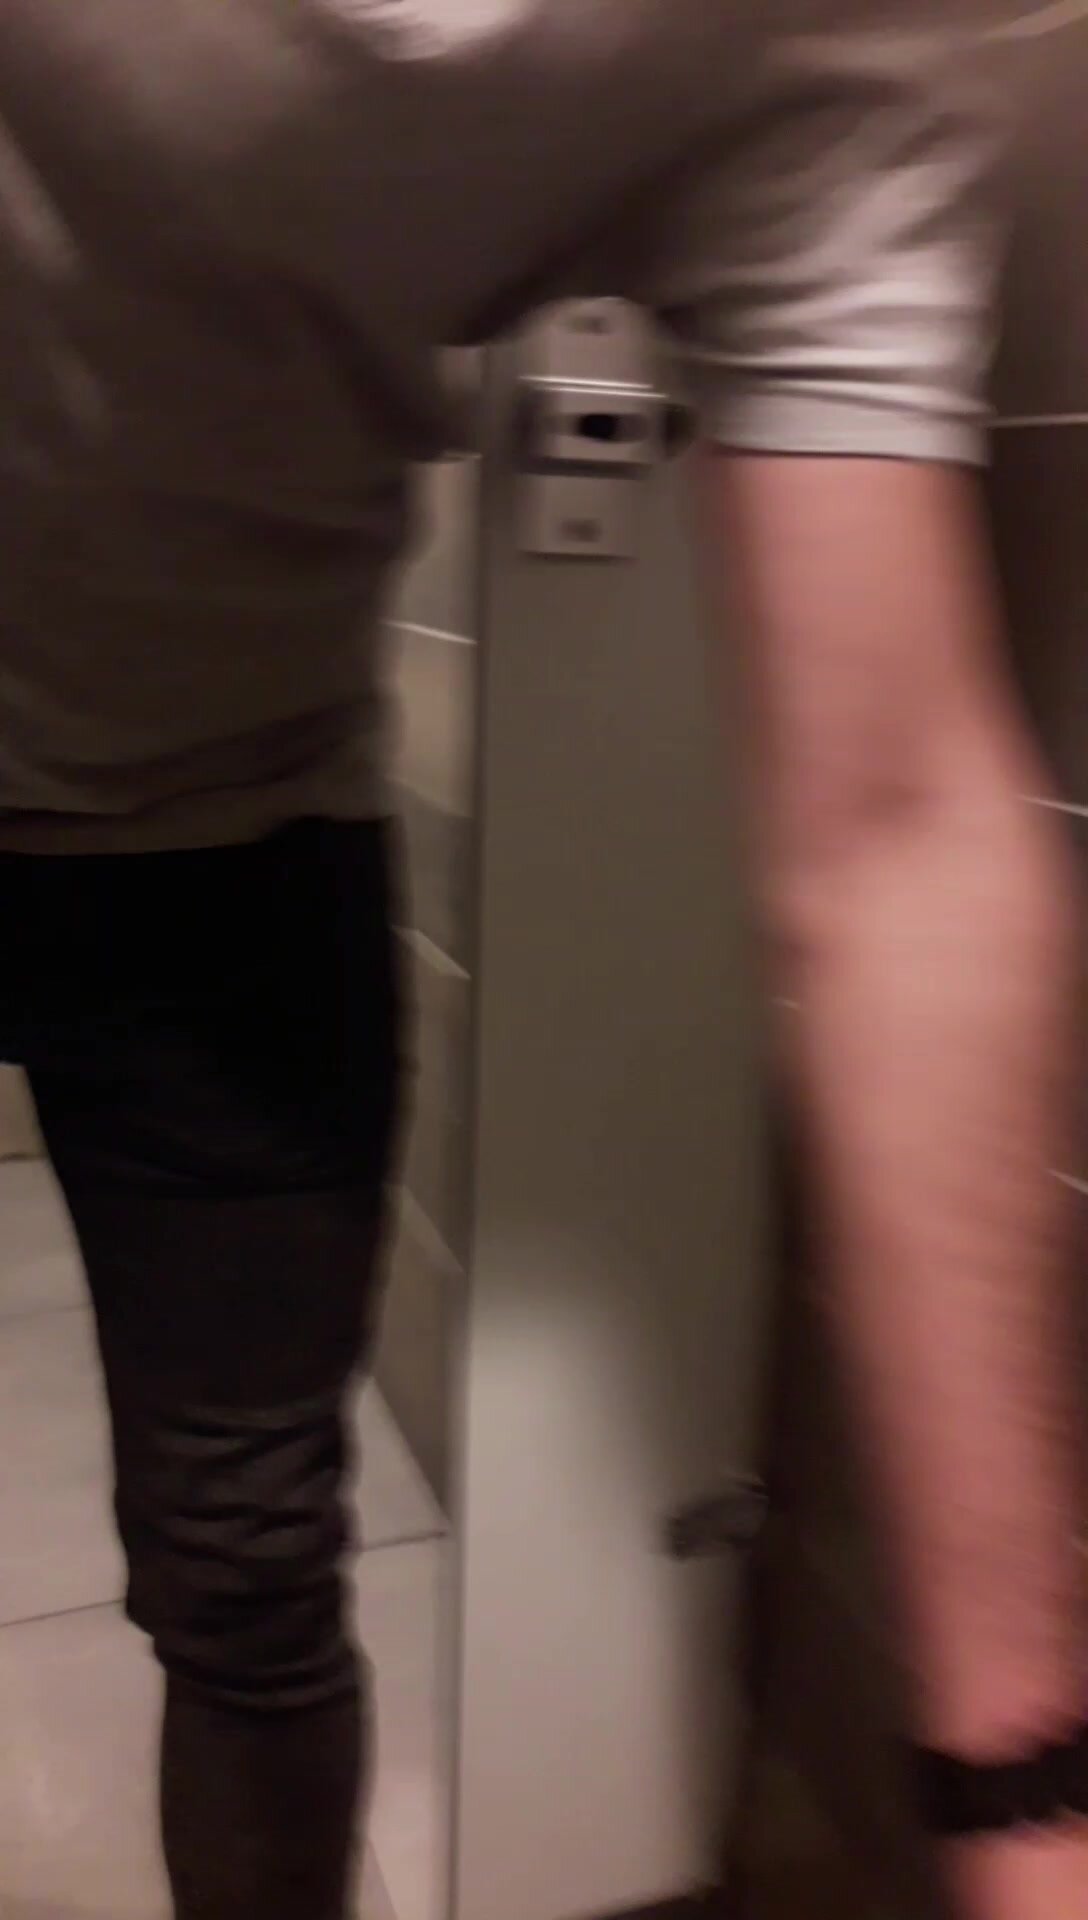 Strangers Opened The Public Toilet Door - video 27